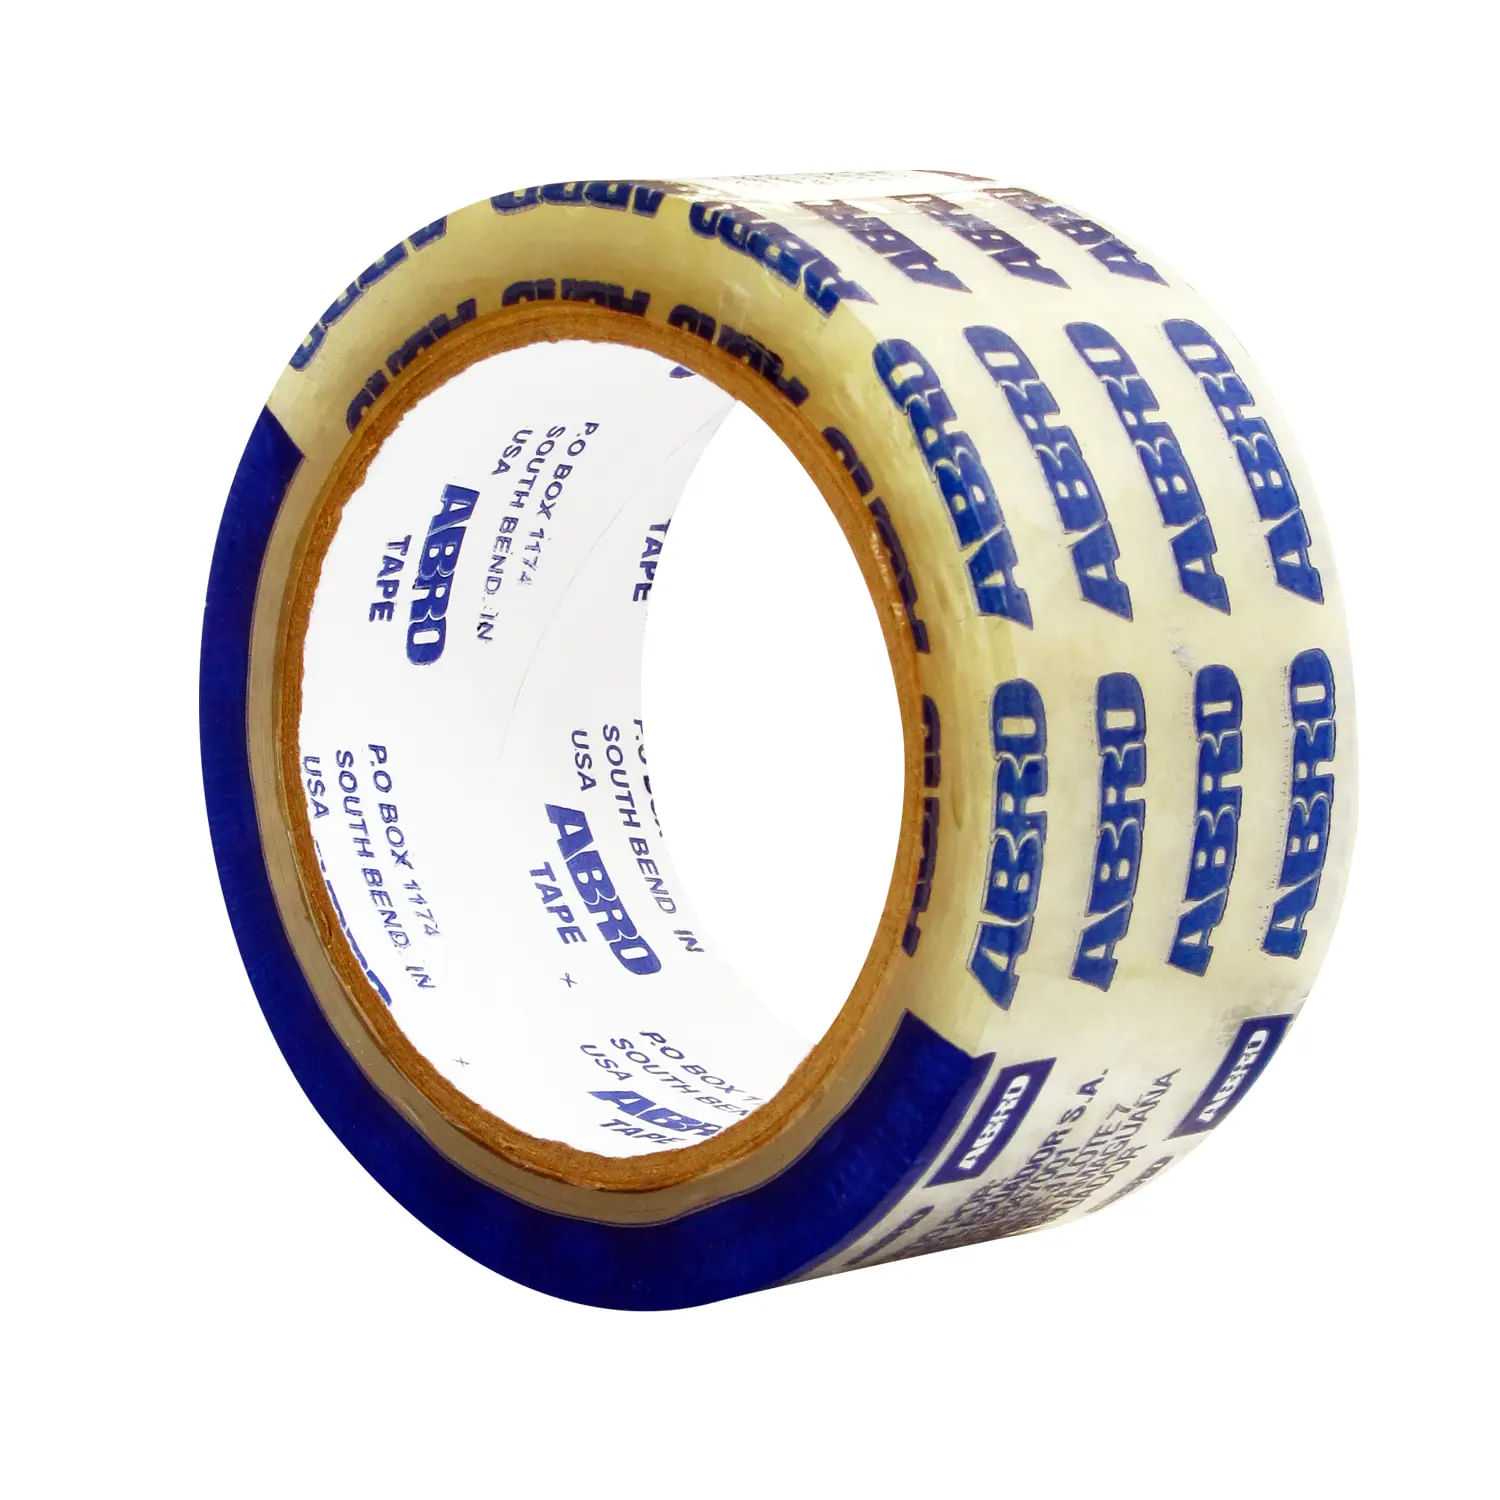 Cinta Masking Tape para Pintar 3M Scotch Blue 2090 2.4 cm x 54.8 m